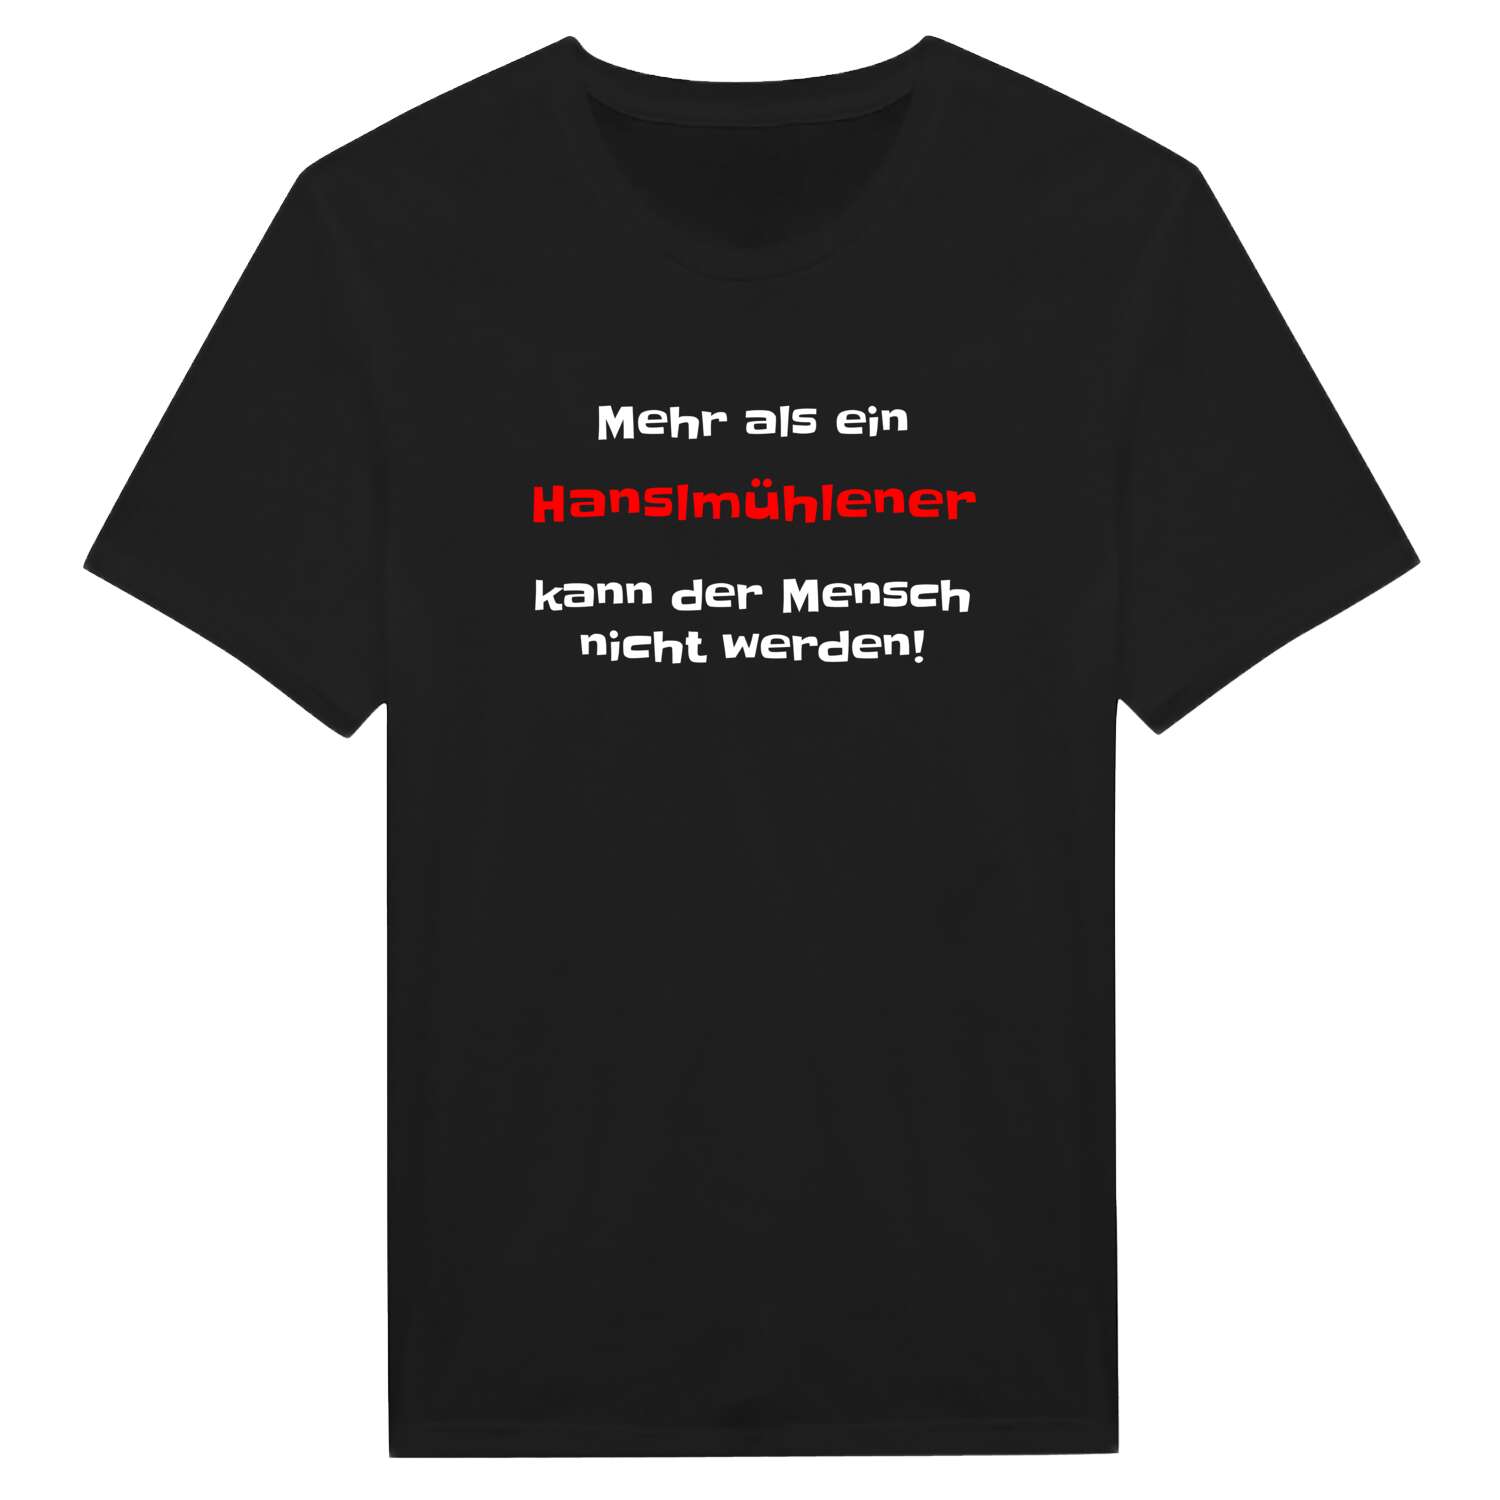 Hanslmühle T-Shirt »Mehr als ein«